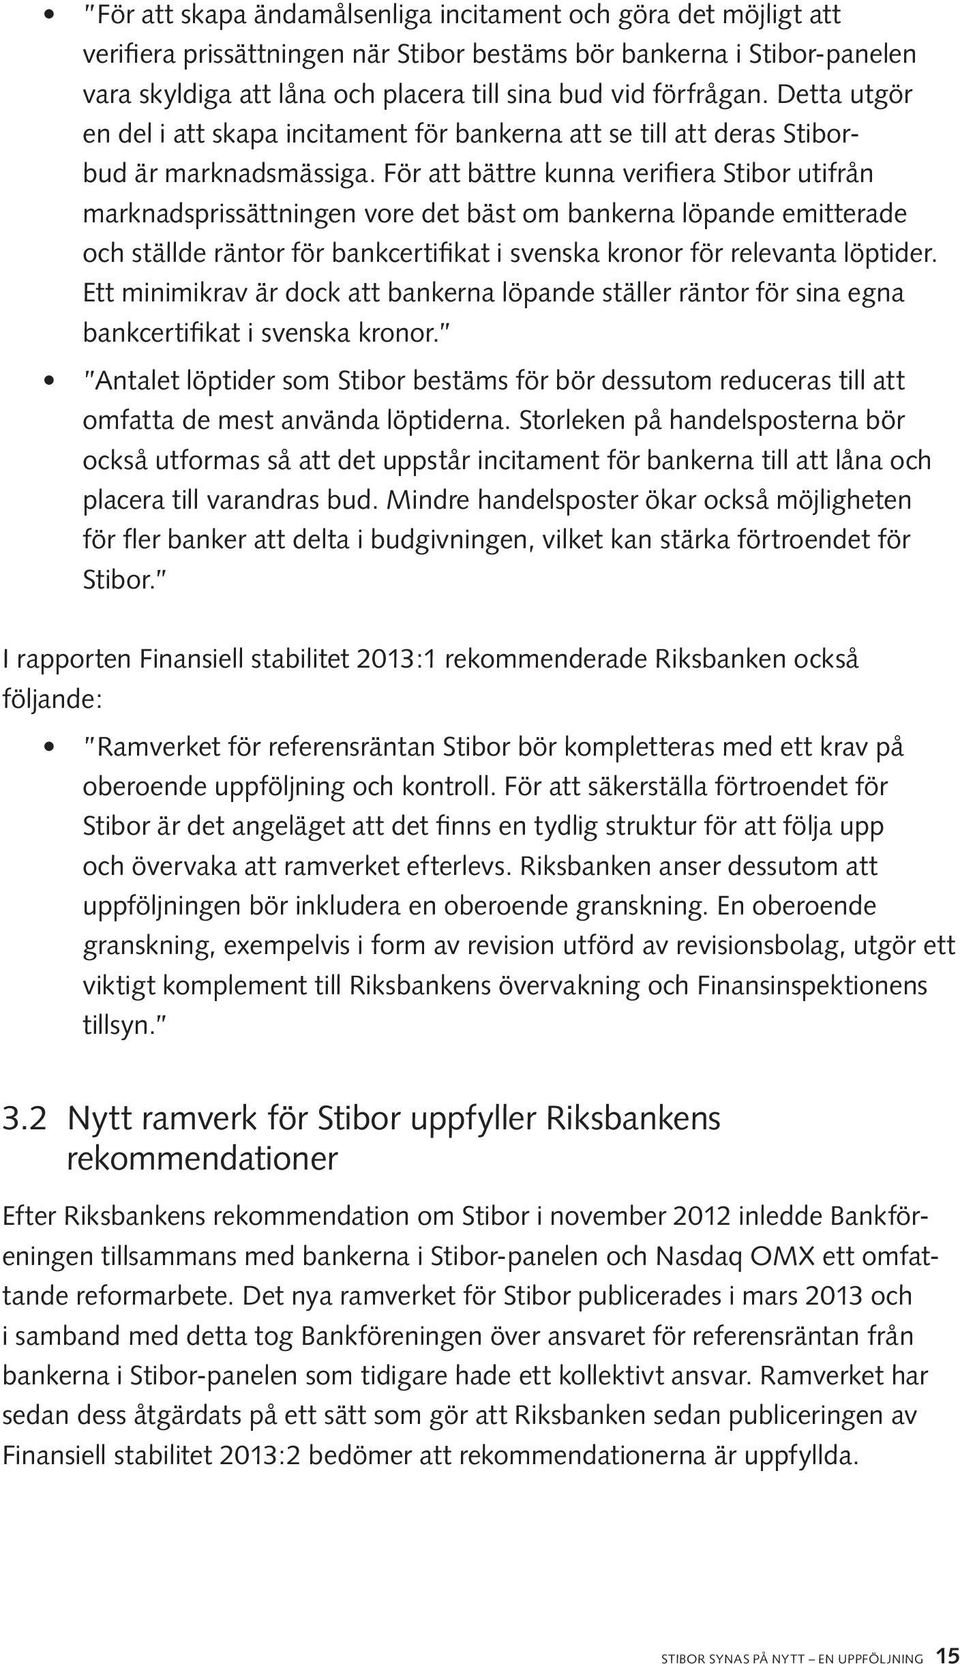 För att bättre kunna verifiera Stibor utifrån marknadsprissättningen vore det bäst om bankerna löpande emitterade och ställde räntor för bankcertifikat i svenska kronor för relevanta löptider.